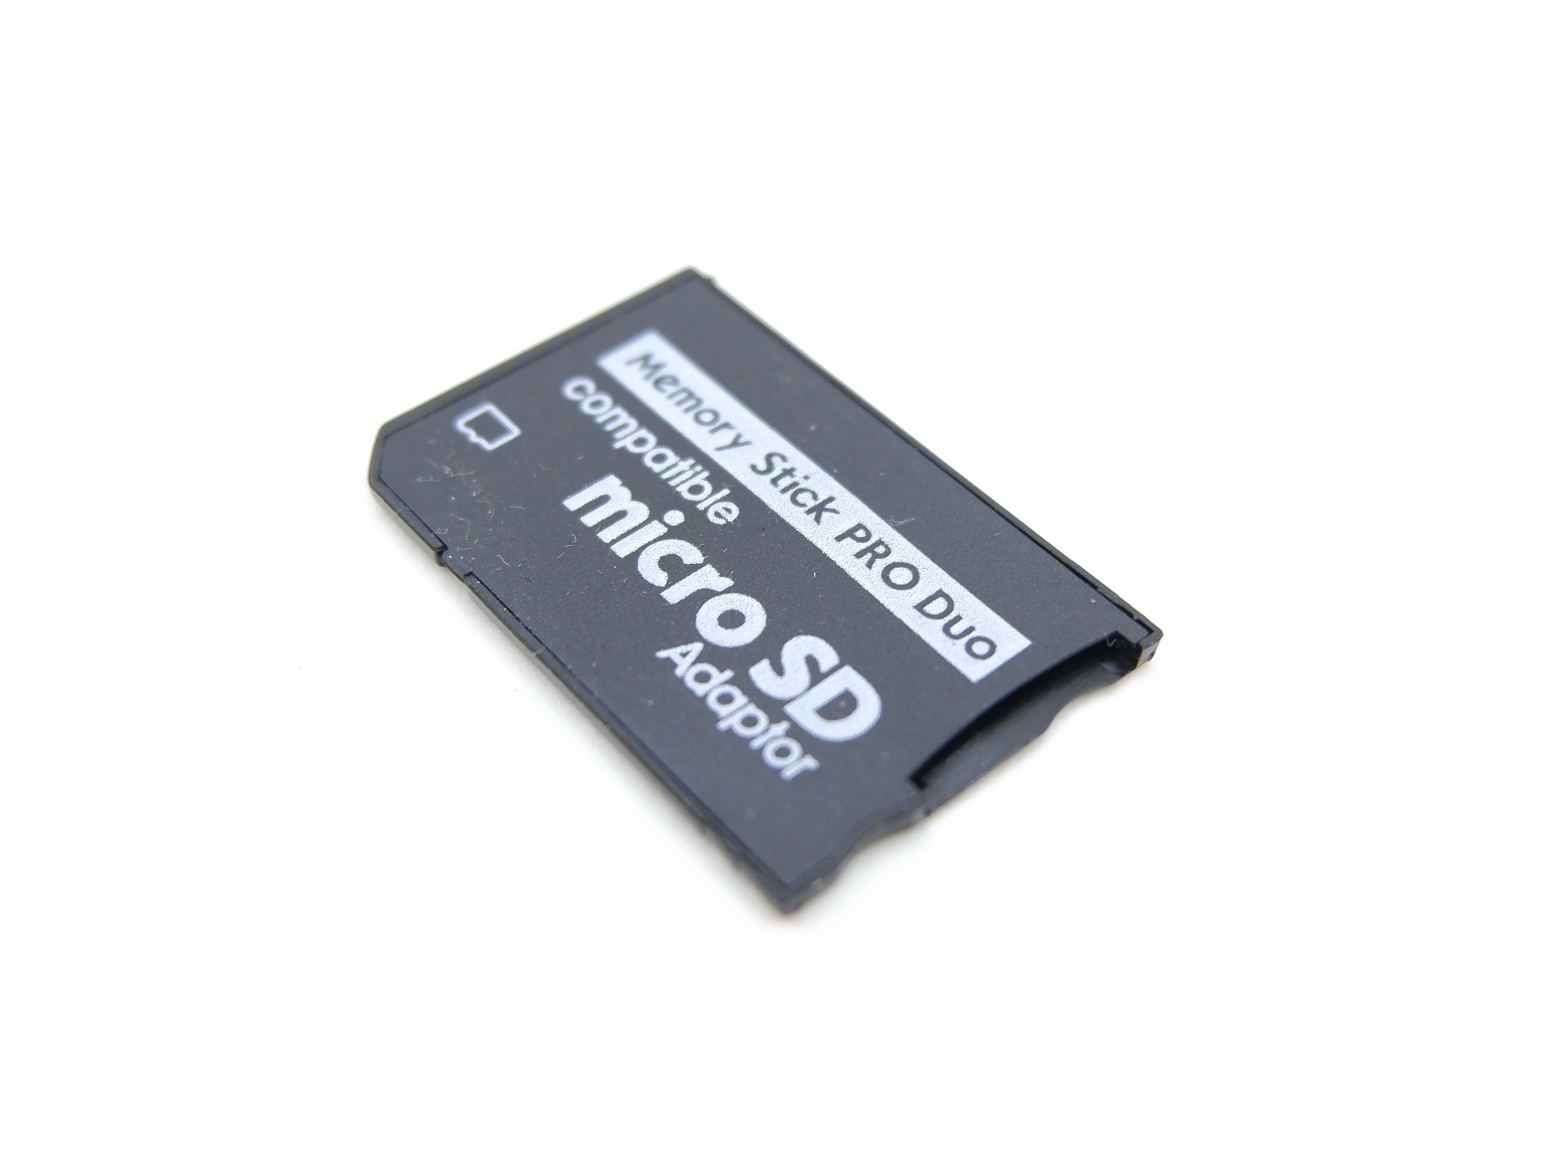 Адаптер microsdhc. Sony Memory Stick Pro Duo адаптер переходник. Адаптер Pro Duo - MICROSD. Memory Stick Pro Duo адаптер MICROSD. Адаптер для карты памяти Sony Memory Stick Pro Duo 1gb.